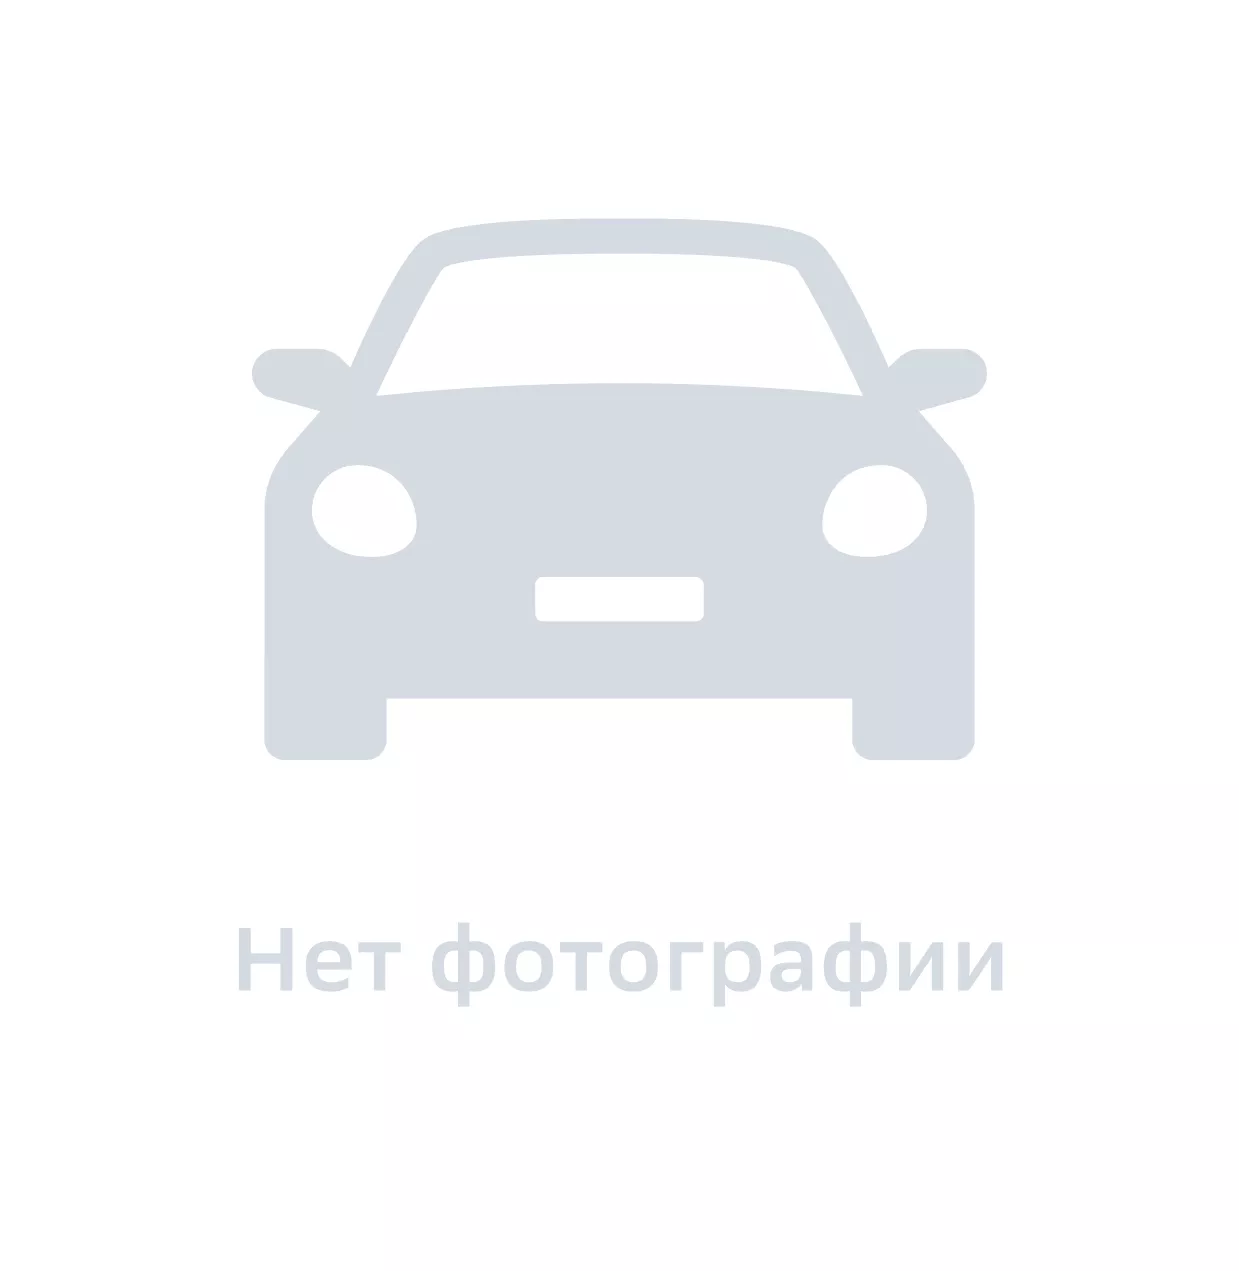 Подкладка фонаря правого, Hyundai-KIA, арт. 717813C500, цена за 1 шт.